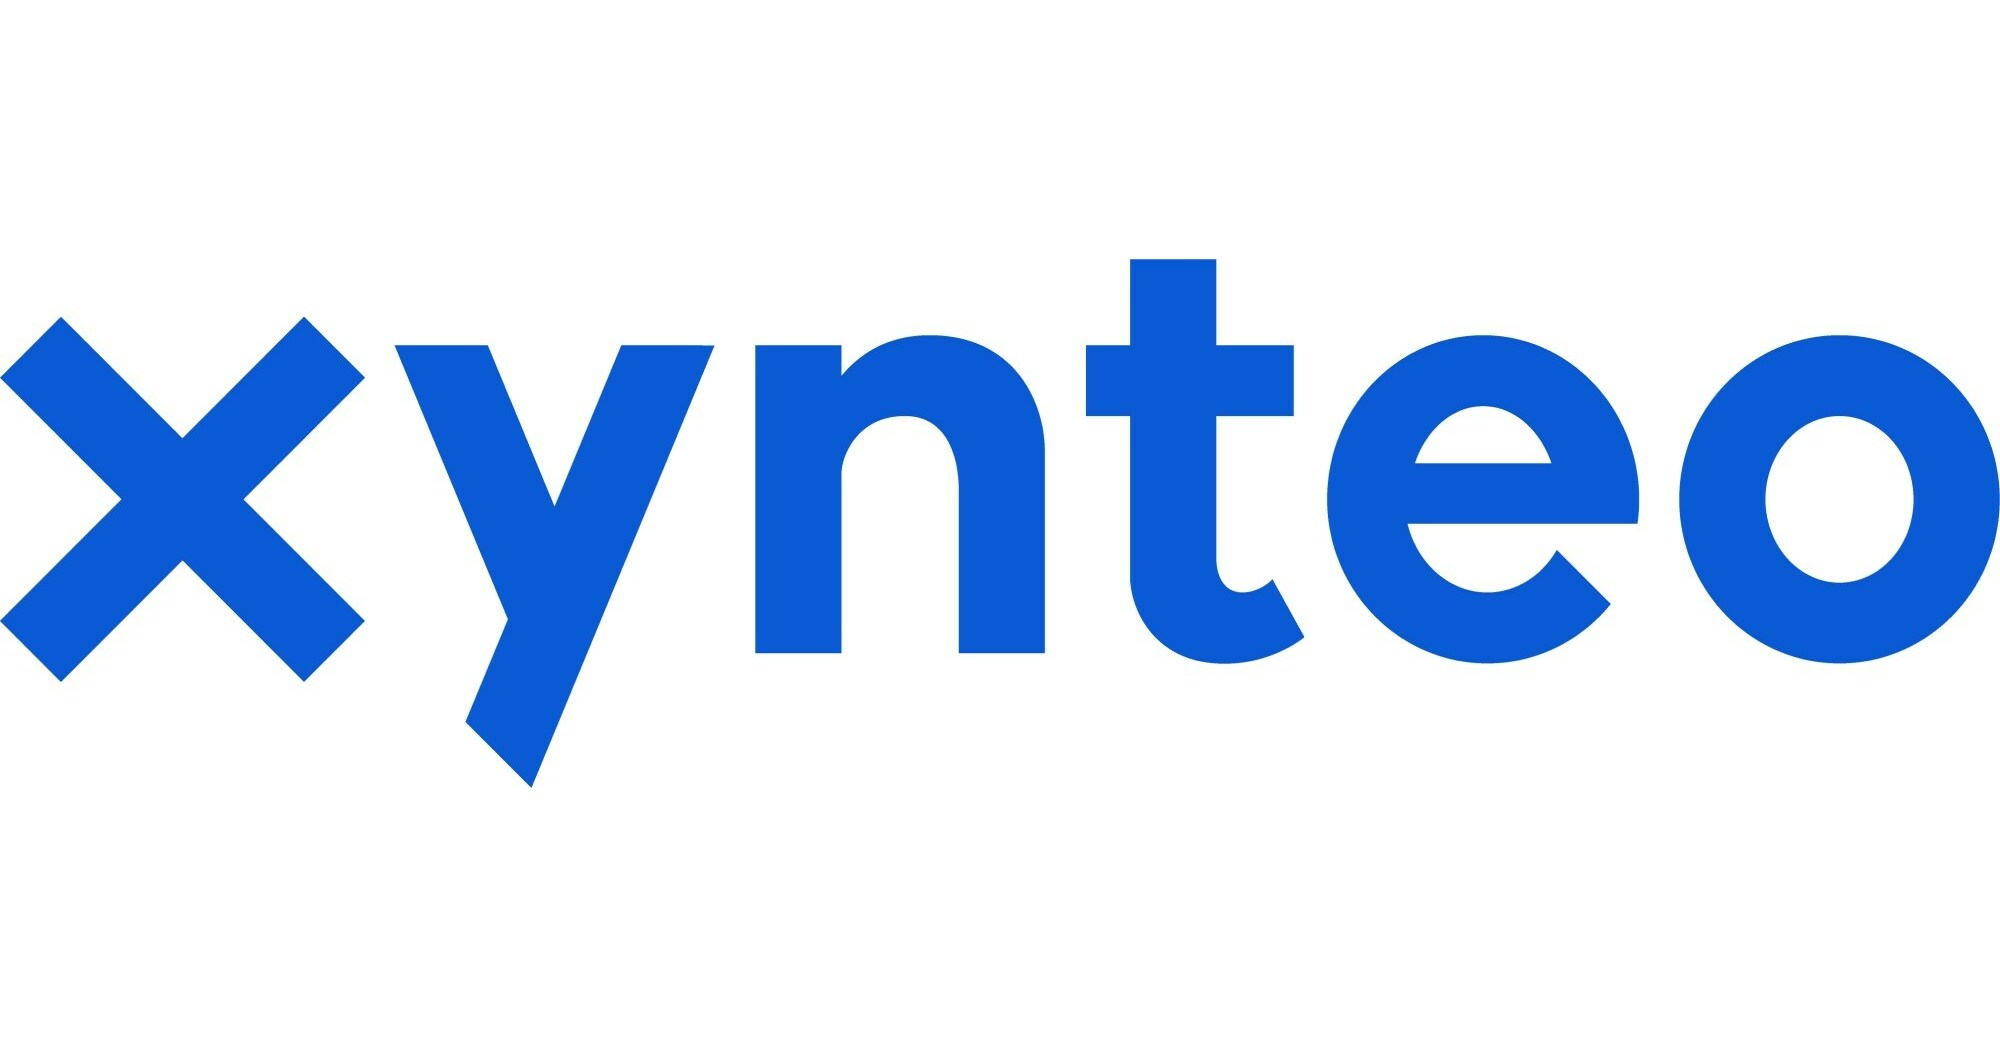 Xynteo kunngjør en majoritetsinvestering fra Leon Capital